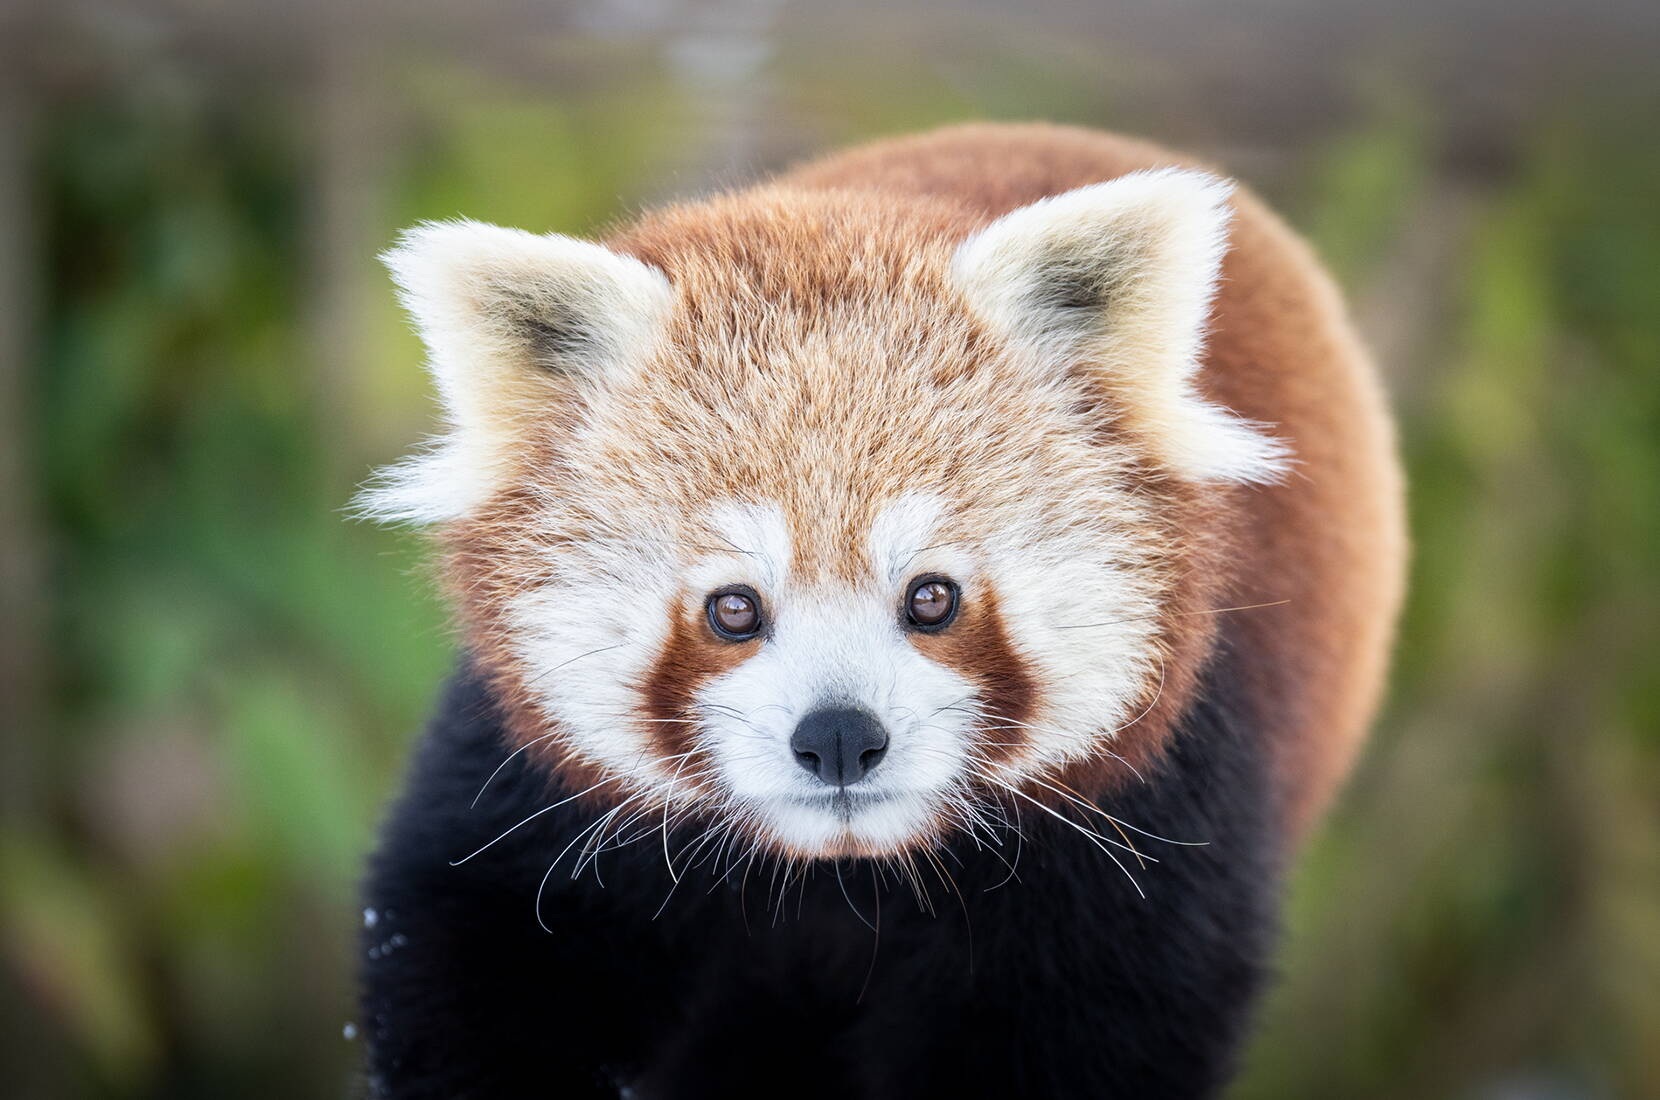 Auf dem Bild ist ein süsser kleiner Panda aus dem Walter Zoo zu sehen, der neugierig in die Kamera blickt.